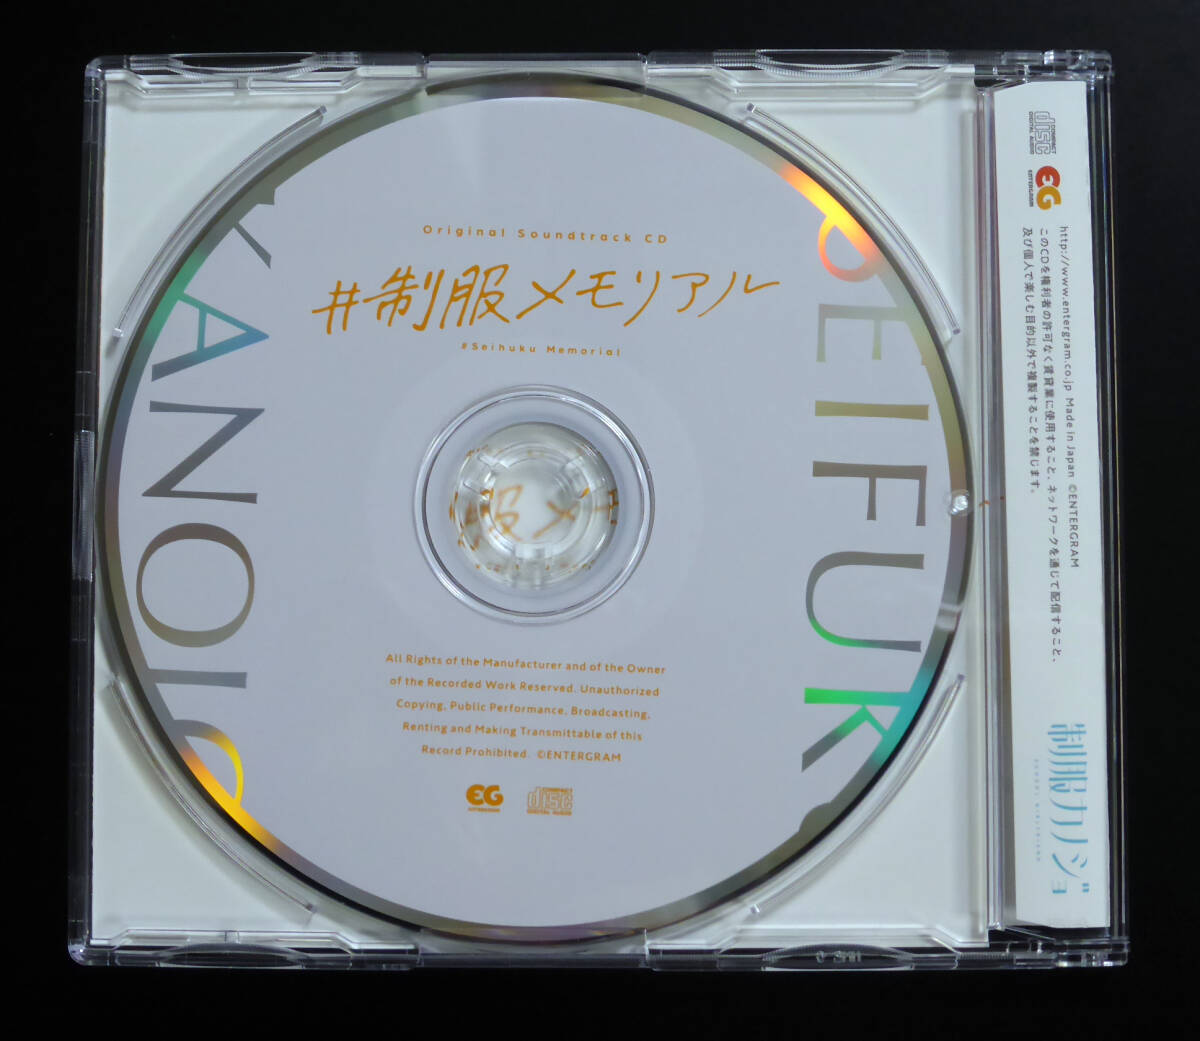 PC soft форма kanojo первоначальная версия enta- грамм 